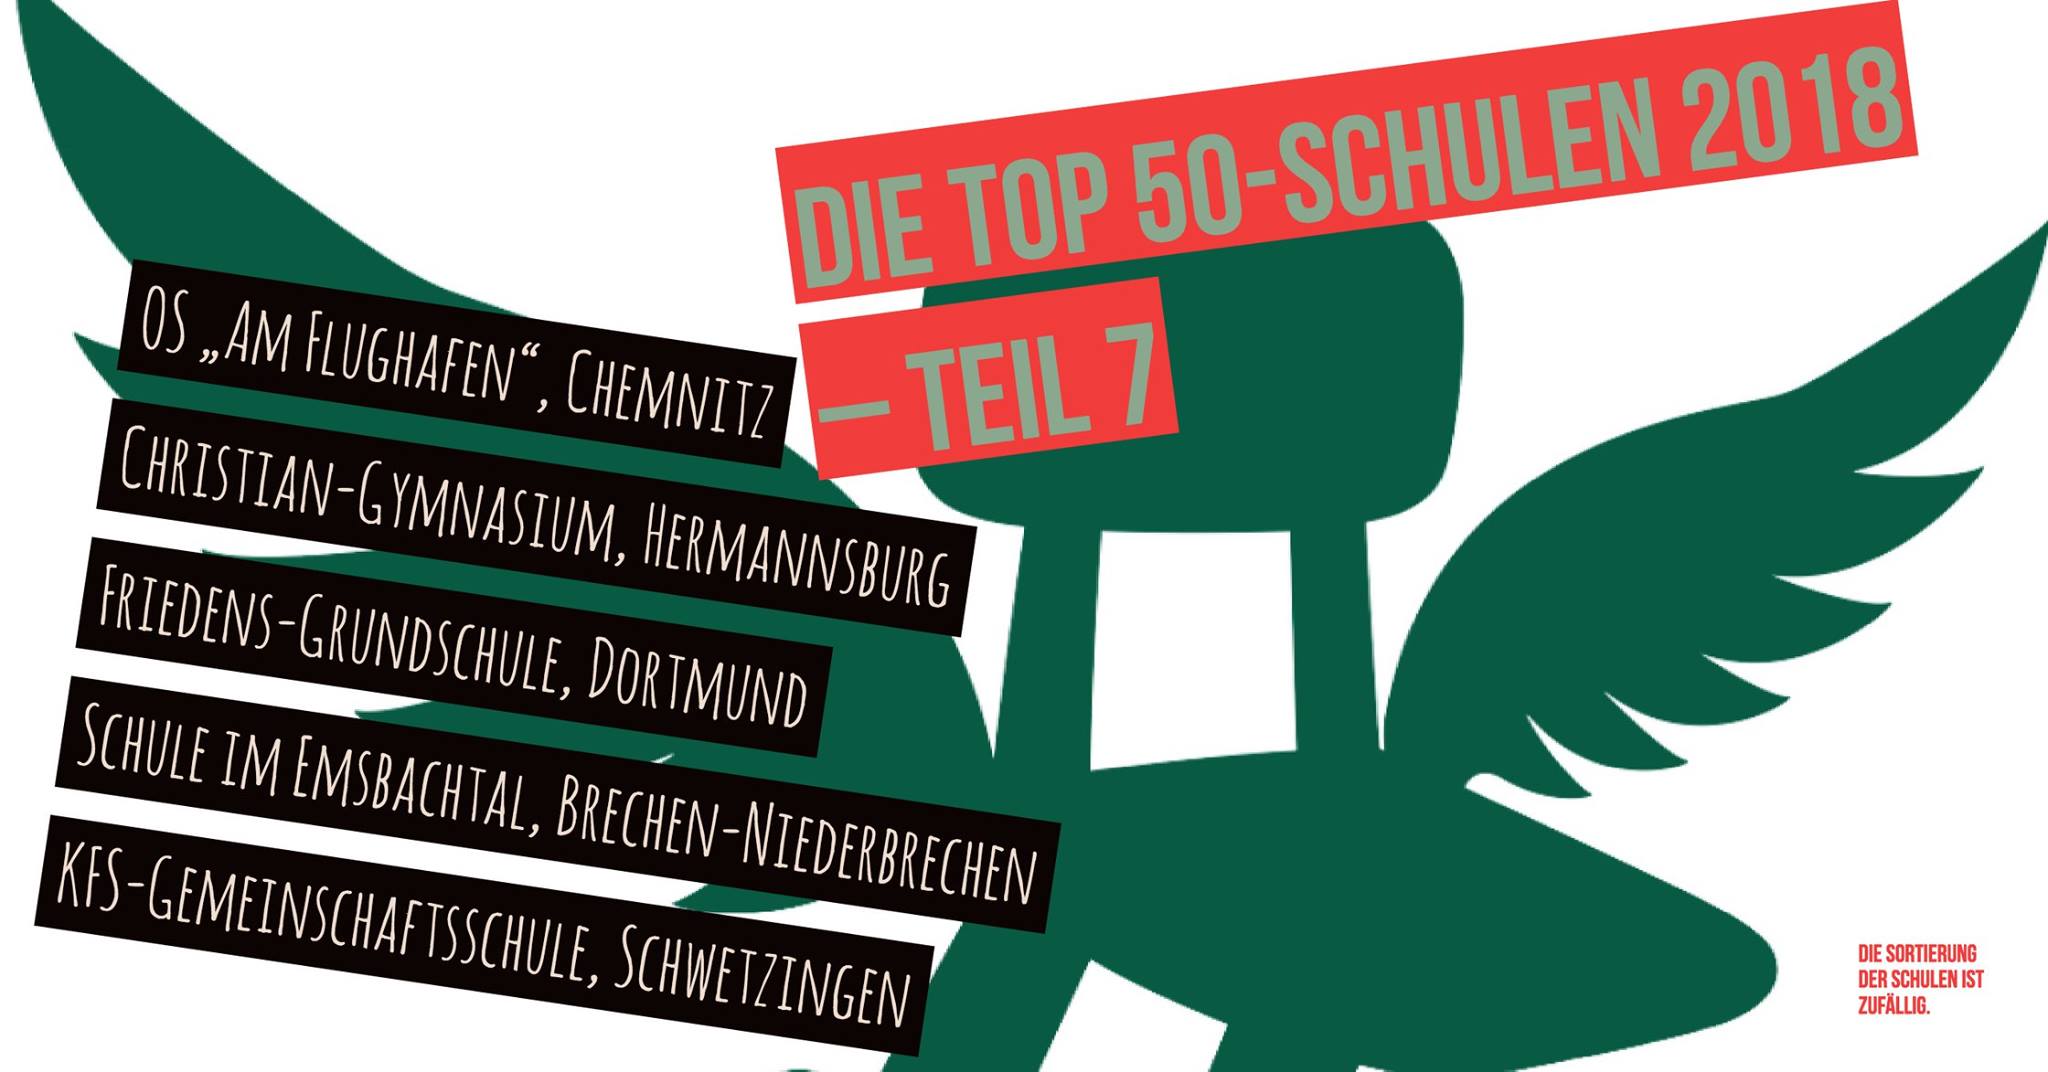 Deutscher Schulpreis Top 50